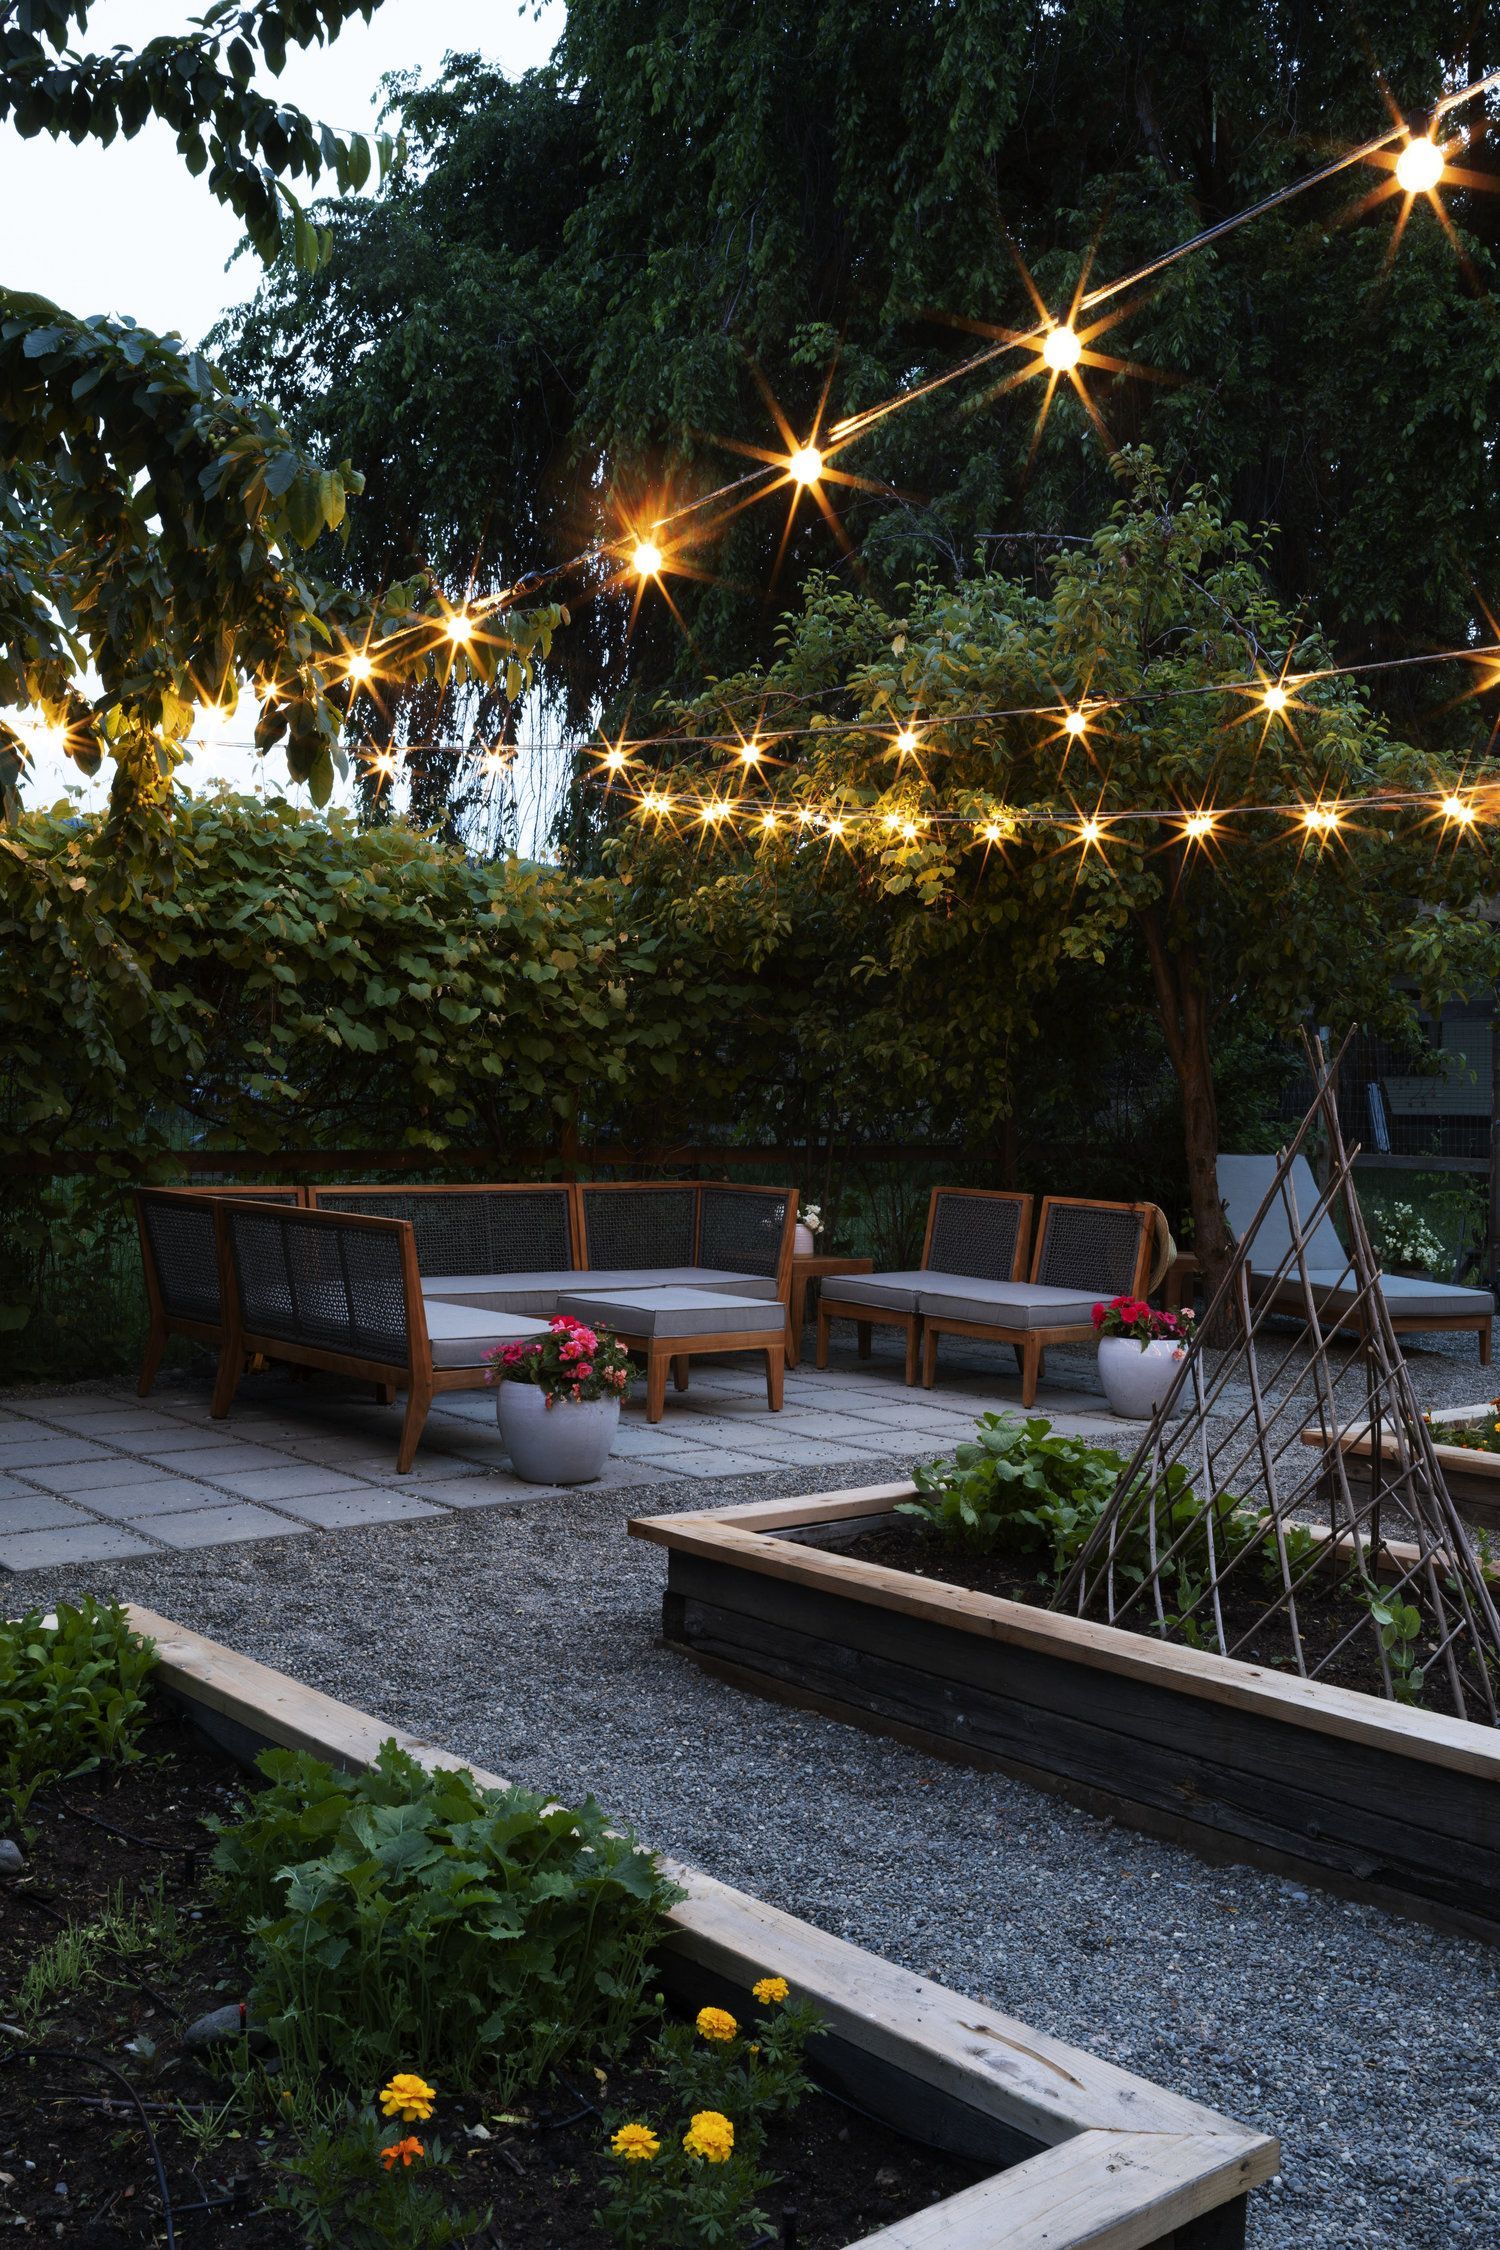 7 garden design Architecture outdoor kitchens ideas